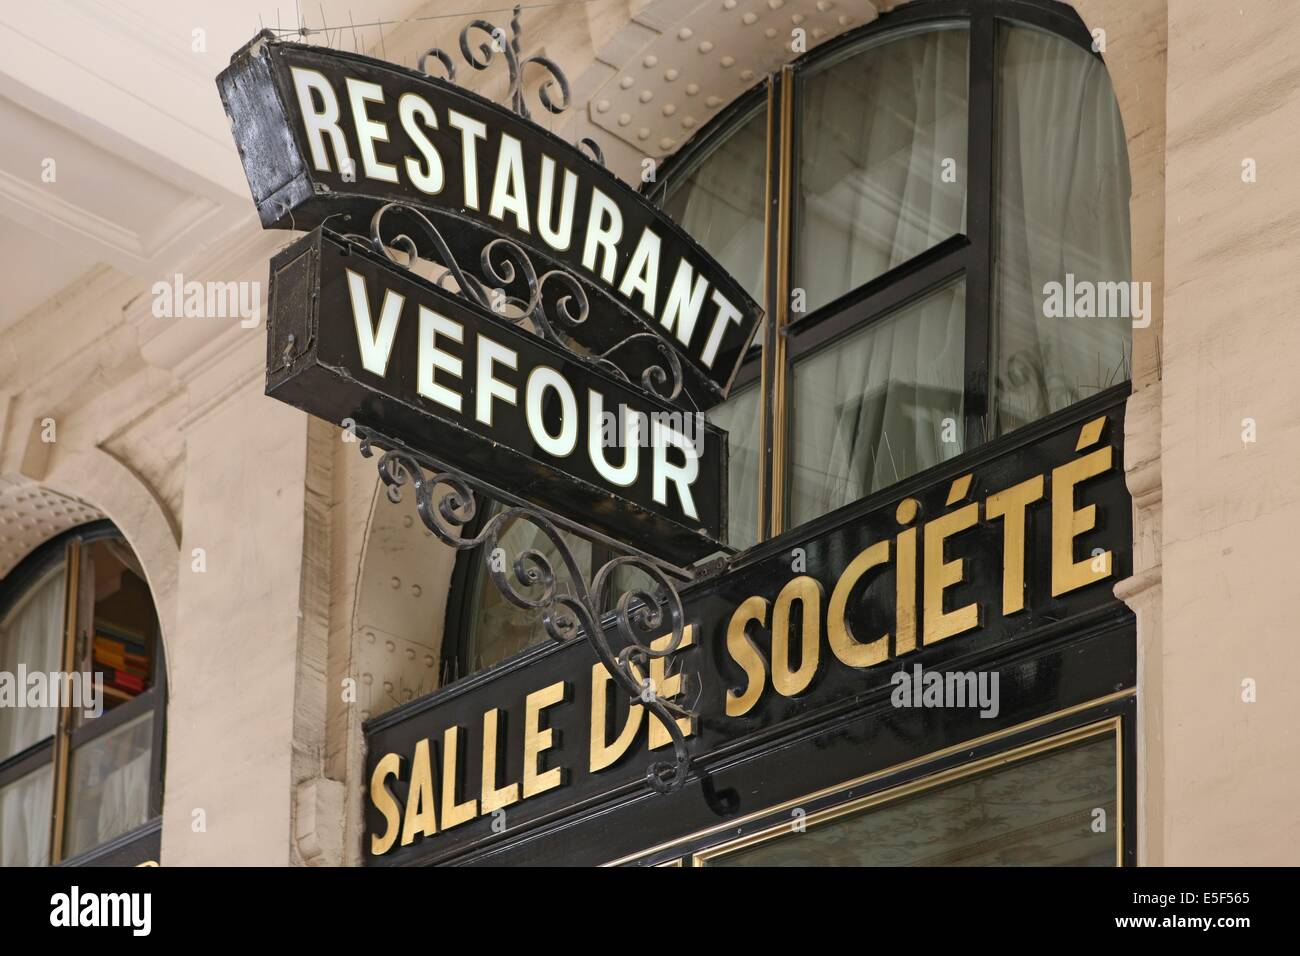 France, ile de france, paris 4e arrondissement, palais royal, galerie beaujolais, restaurant le grand vefour, chef guy martin,  Date : 2011-2012 Stock Photo